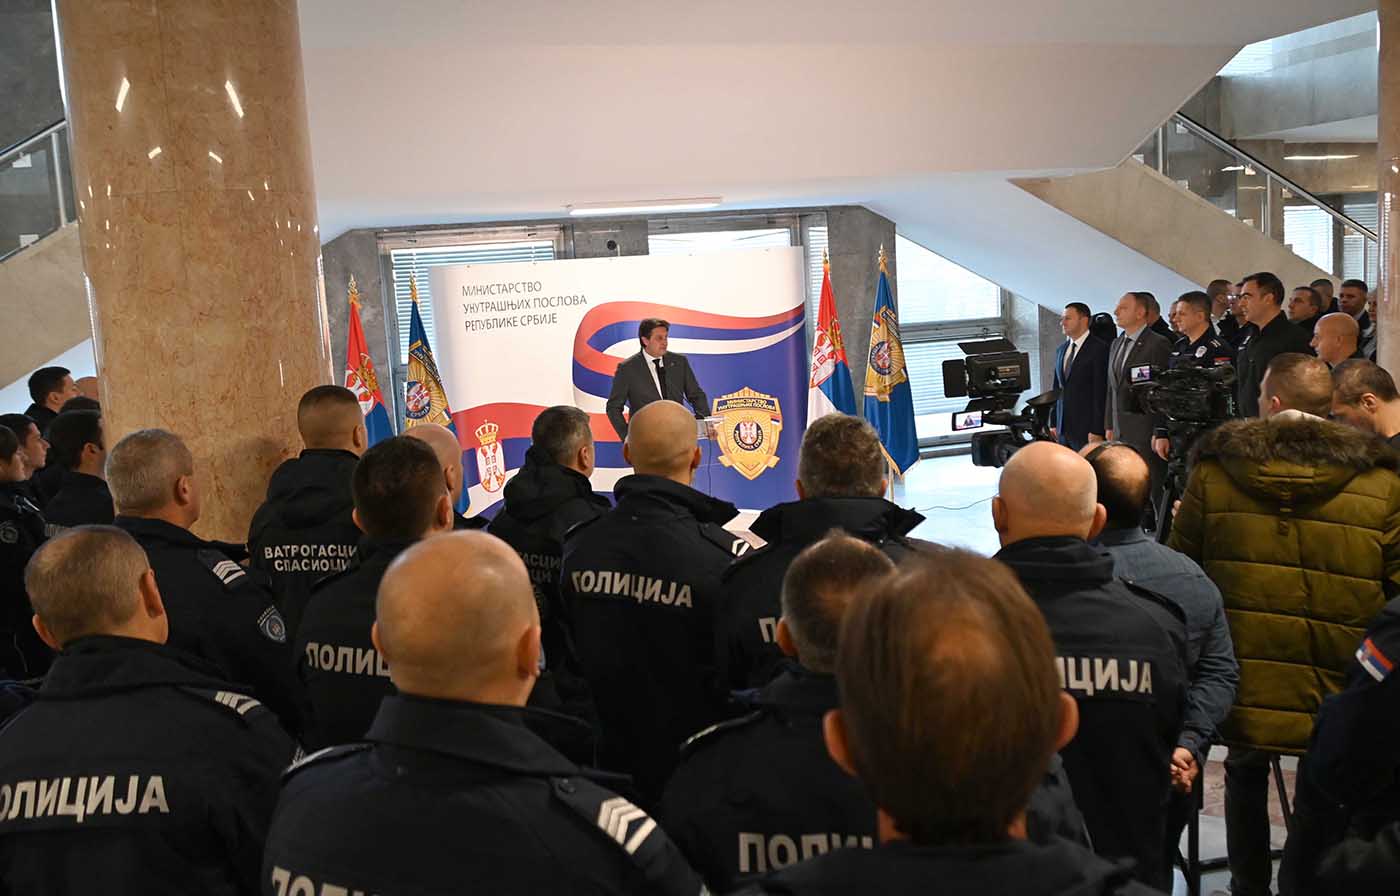 Министар Гашић захвалио полицијским службеницима и ватрогасцима на брзом и храбром реаговању у акциденту са амонијаком